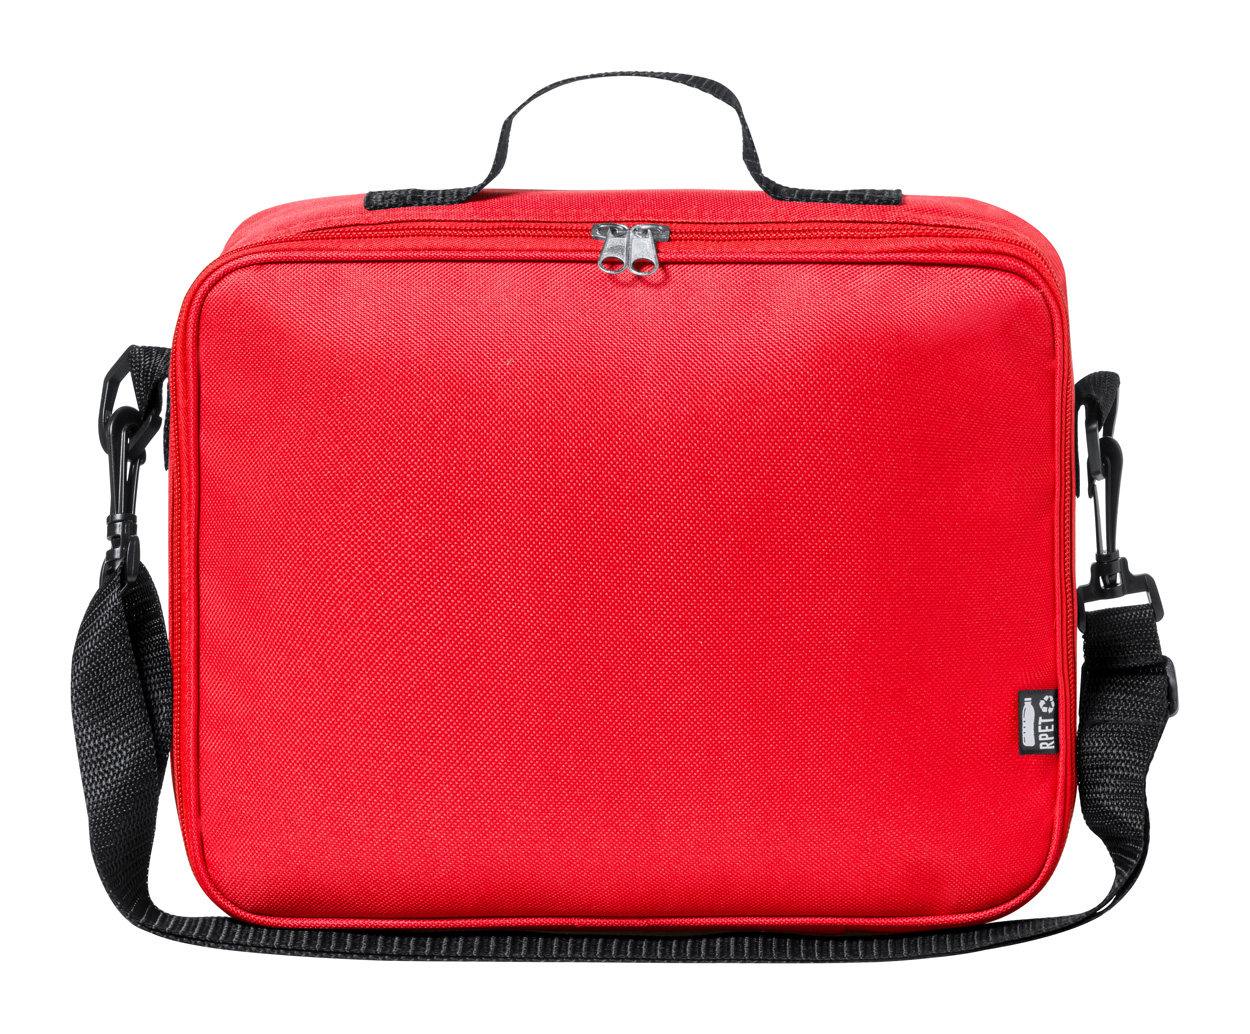 Aitanax cooler bag - red